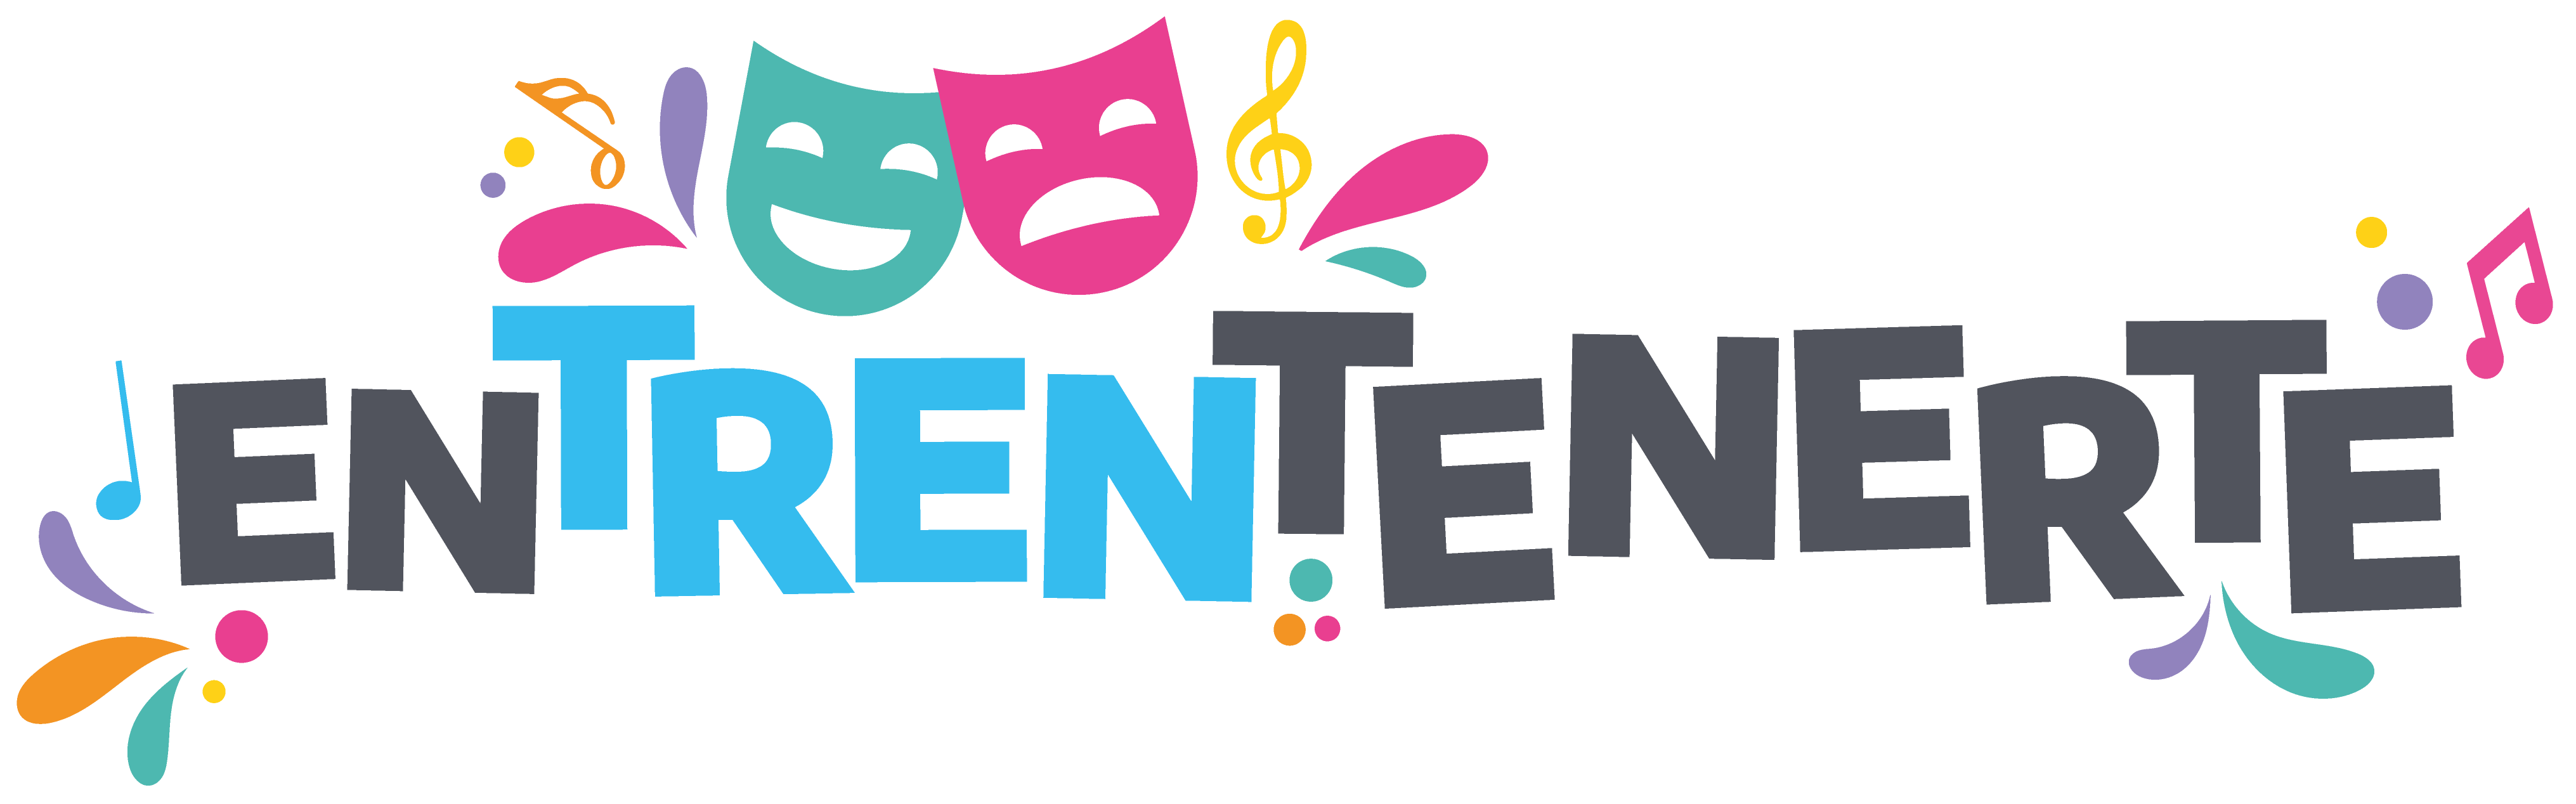 Logo Entrentenerte